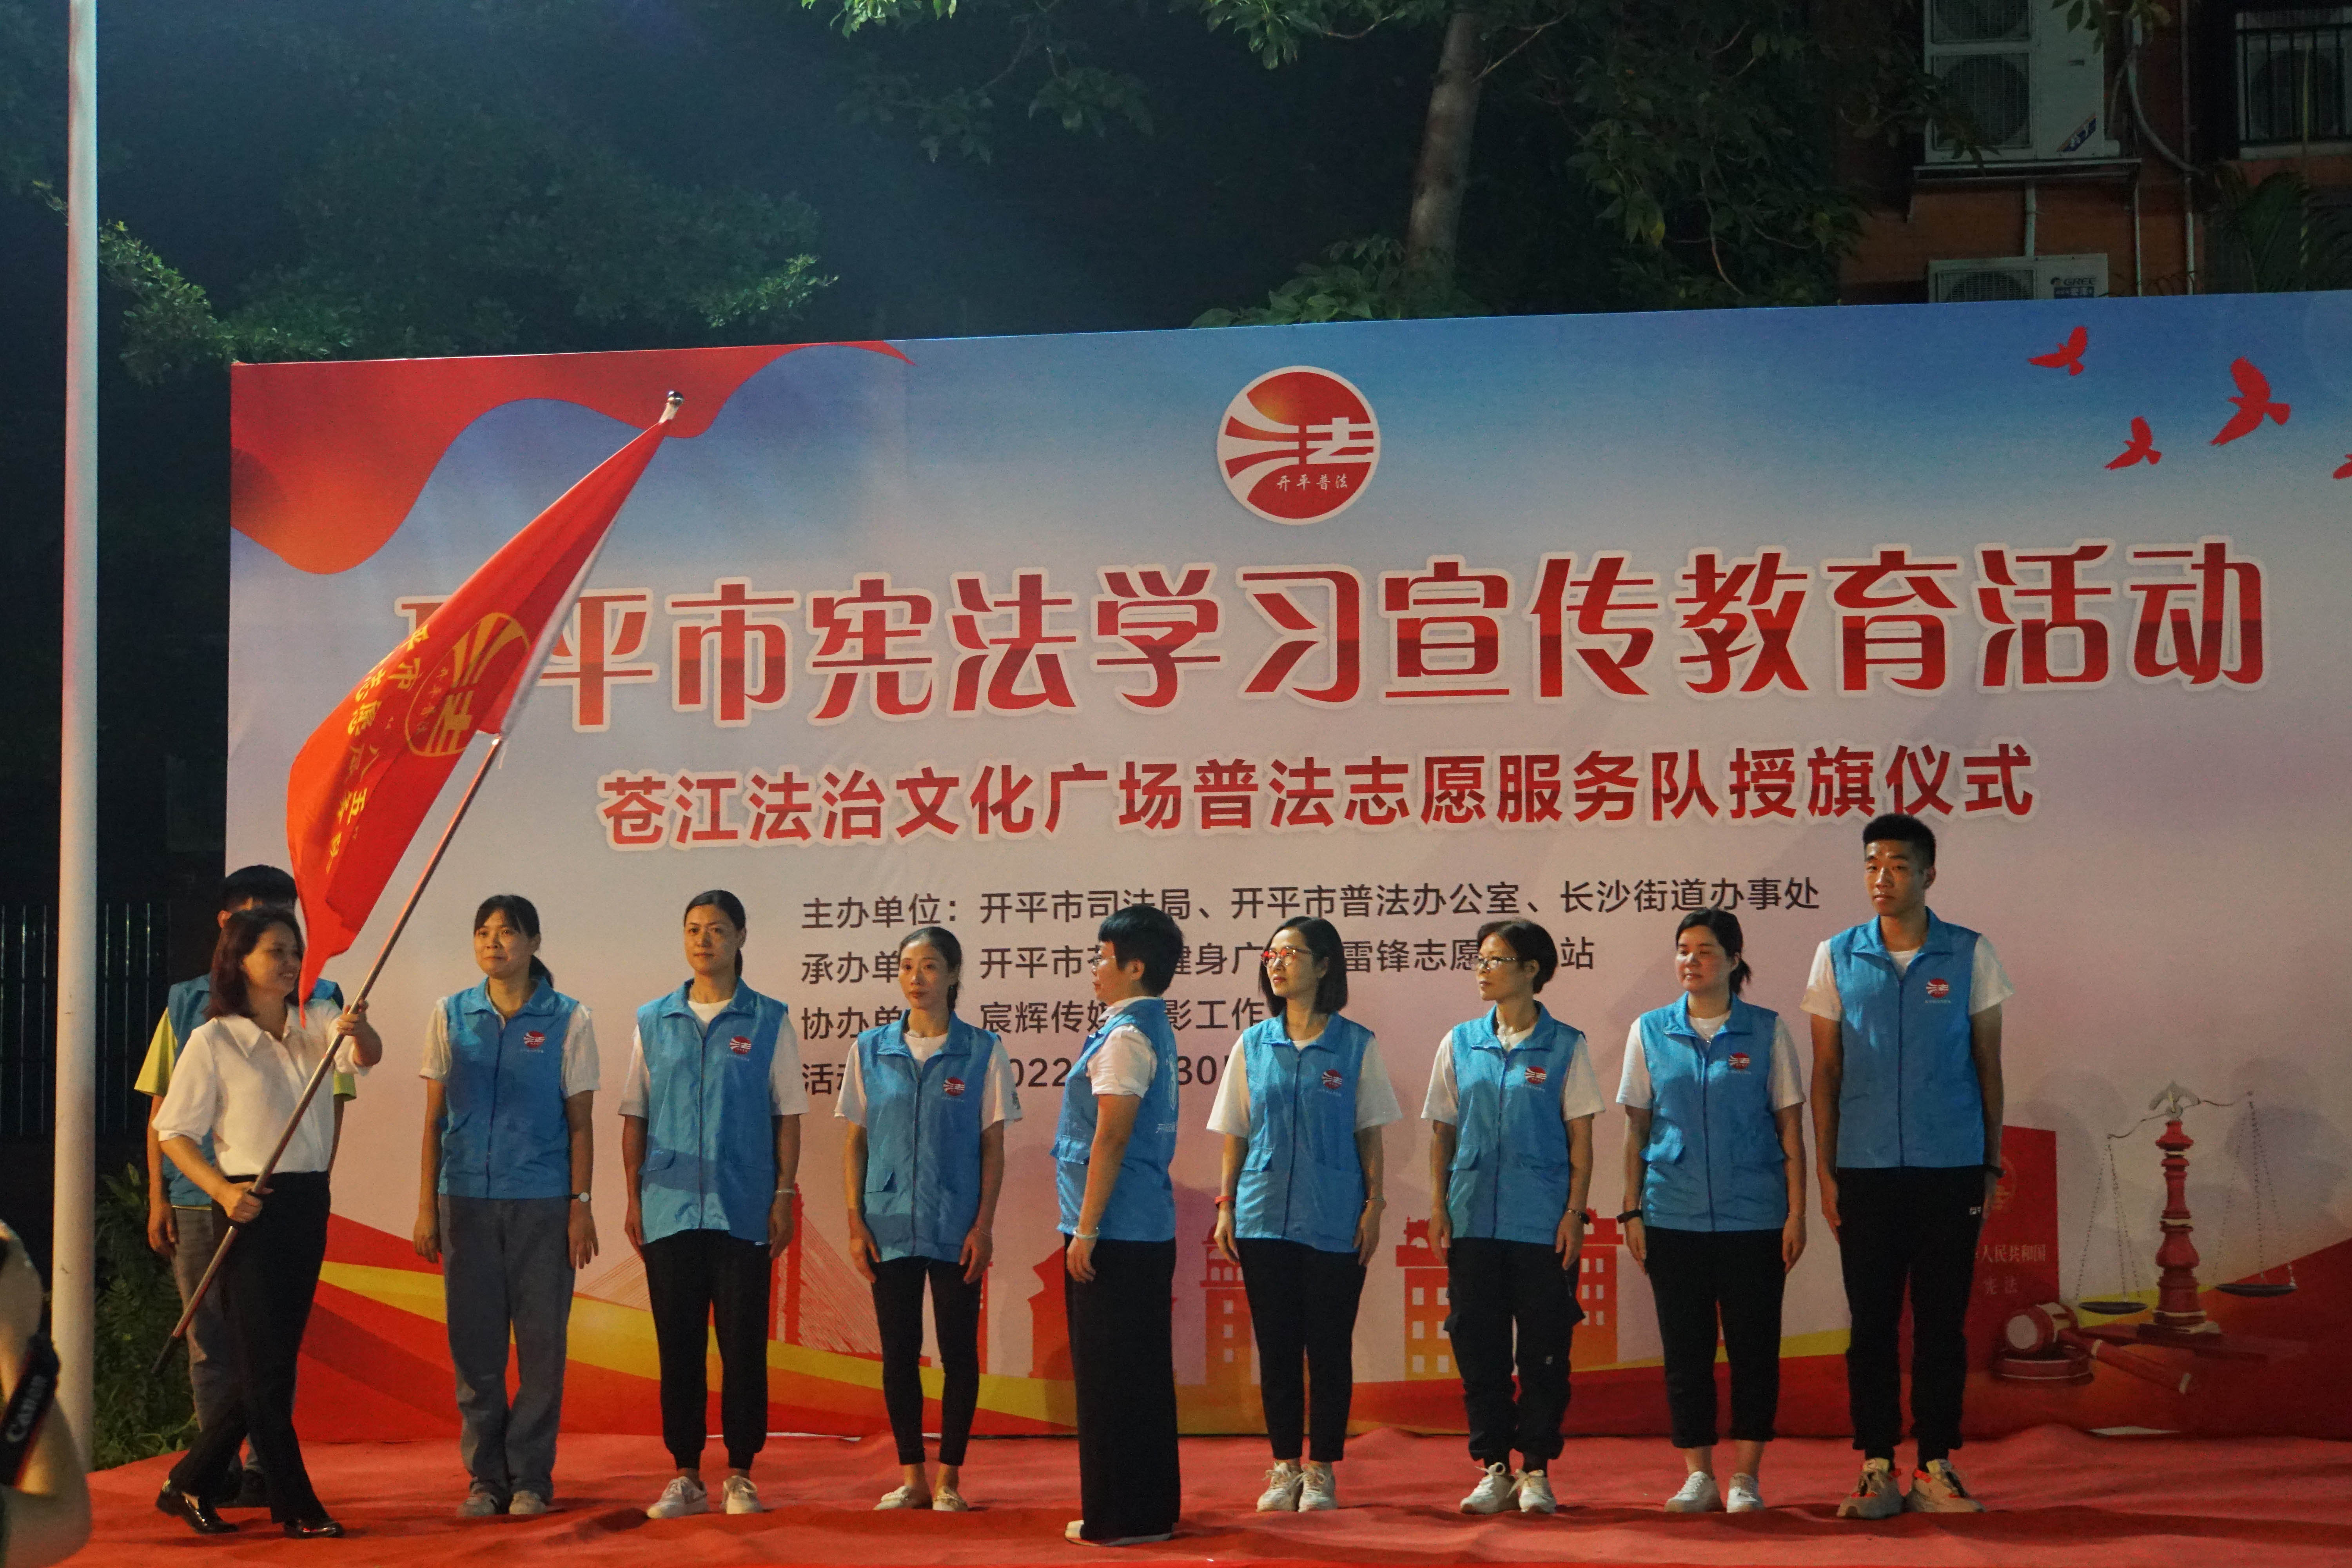 2022年7月30日宪法学下宣传教育活动暨普法志愿队授旗仪式3.JPG